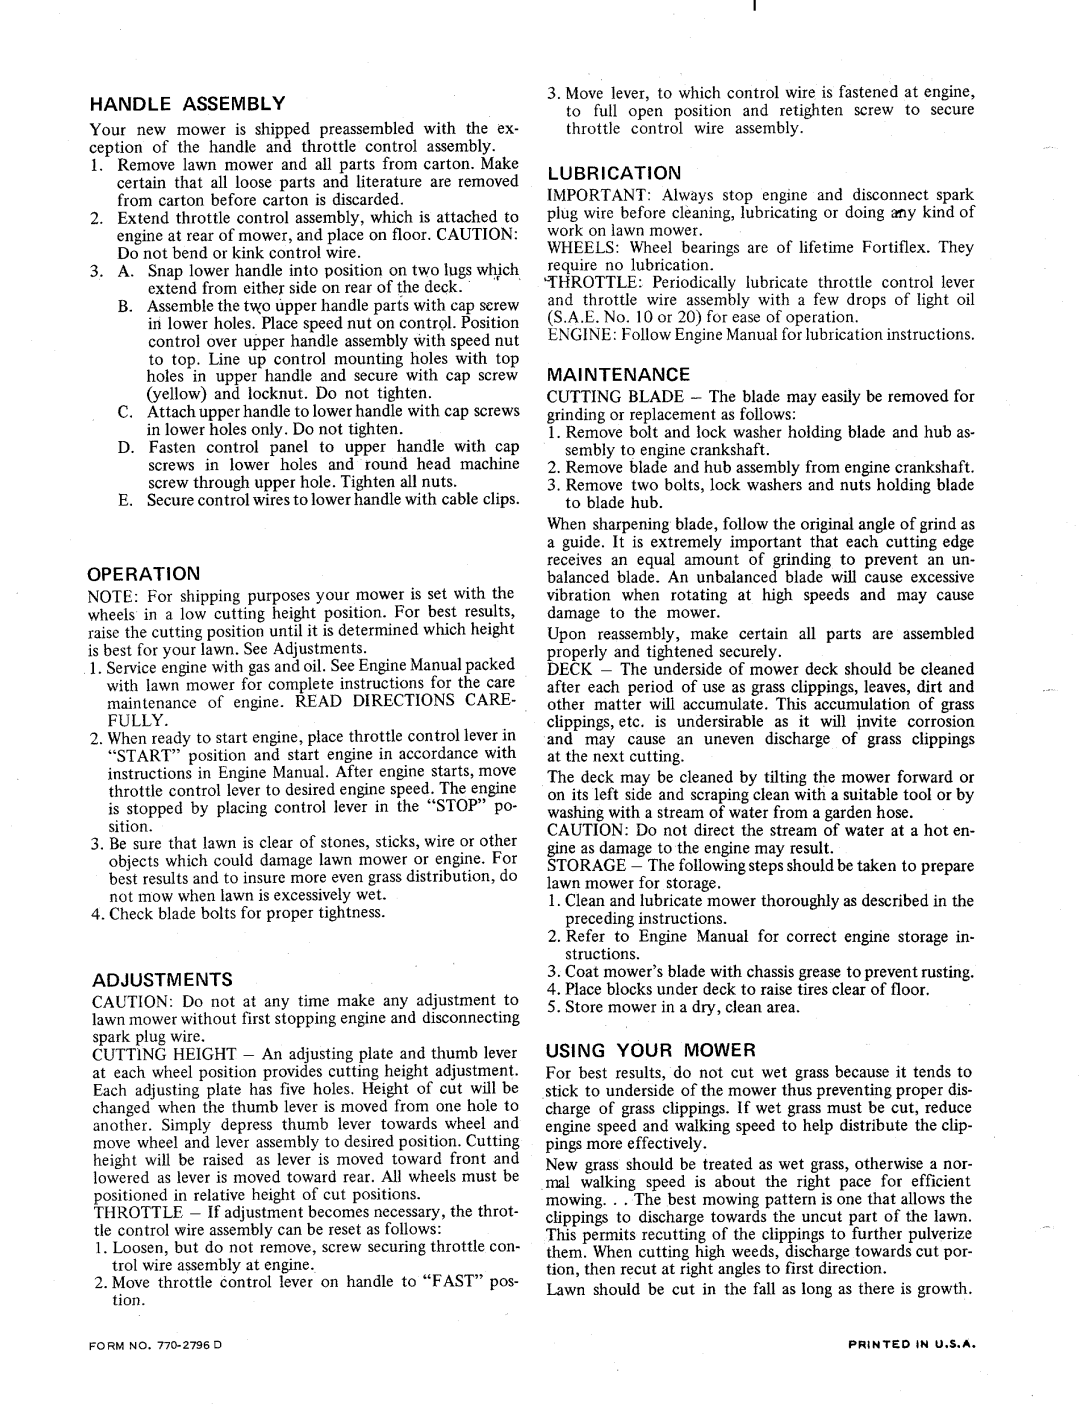 MTD 110-065-002 manual 